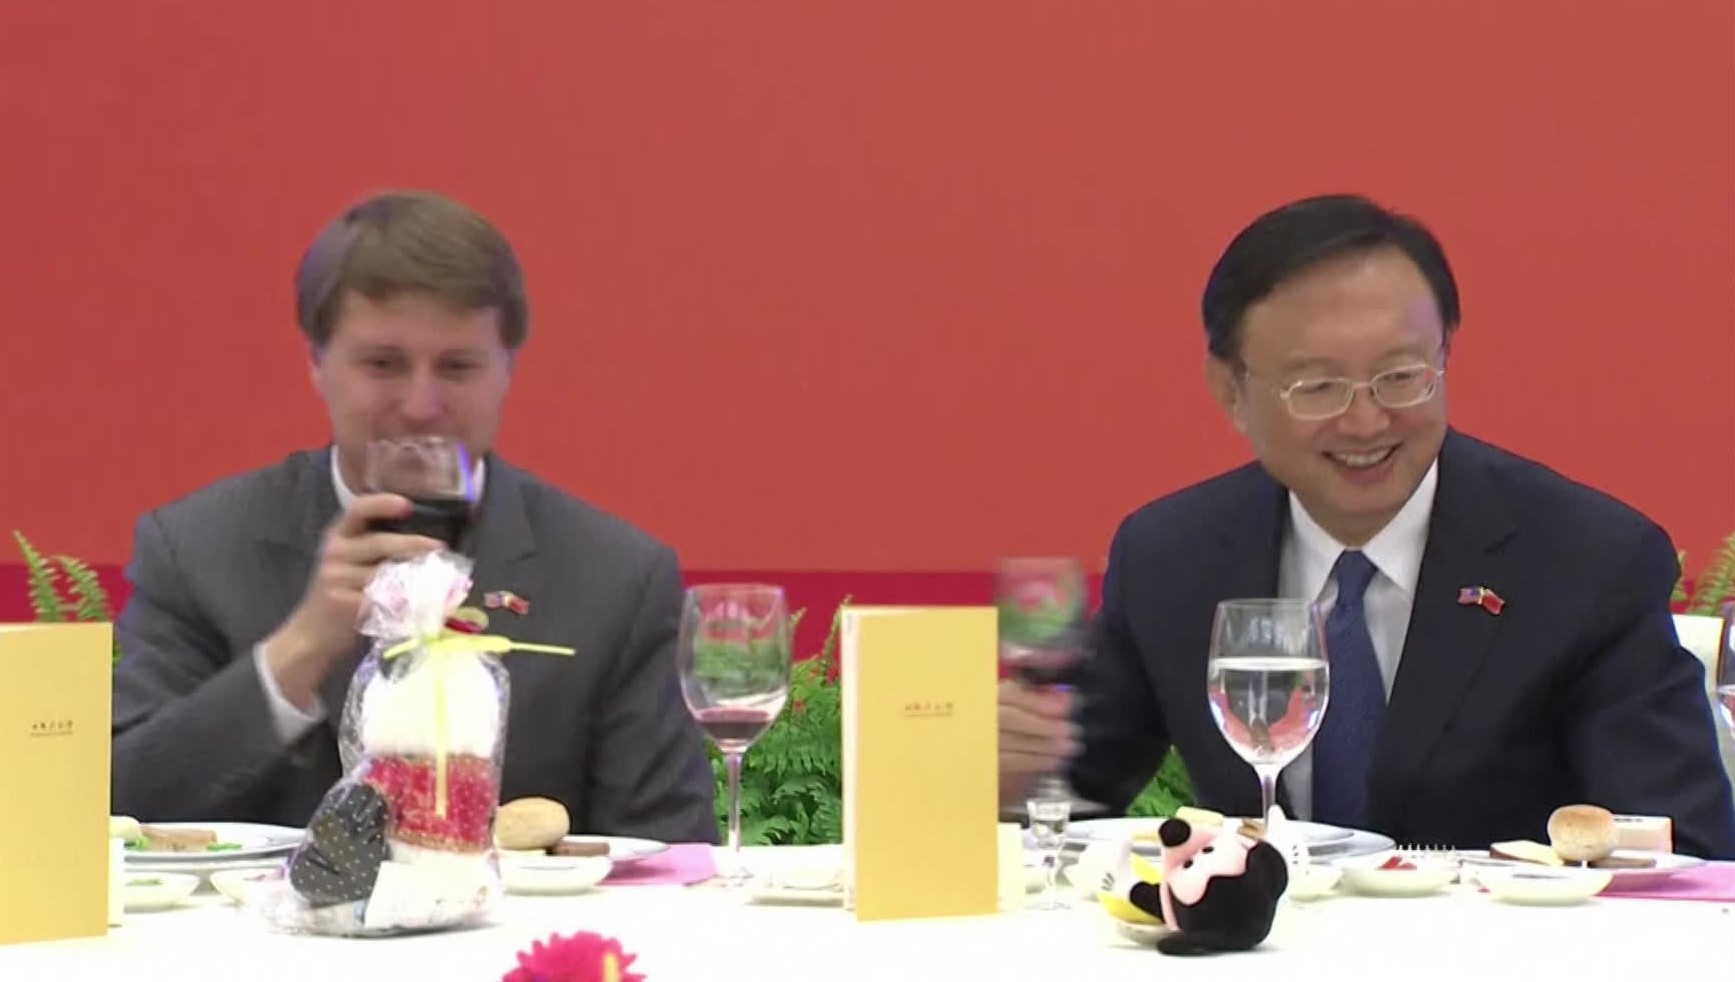 닉슨 대통령 탄생 100주년이던 2013년 중국을 방문한 닉슨의 외손자 크리스토퍼 닉슨 콕스. 당시 양제츠 외교담당 국무위원(오른쪽) 등 중국 고위관리들의 환대를 받았다.